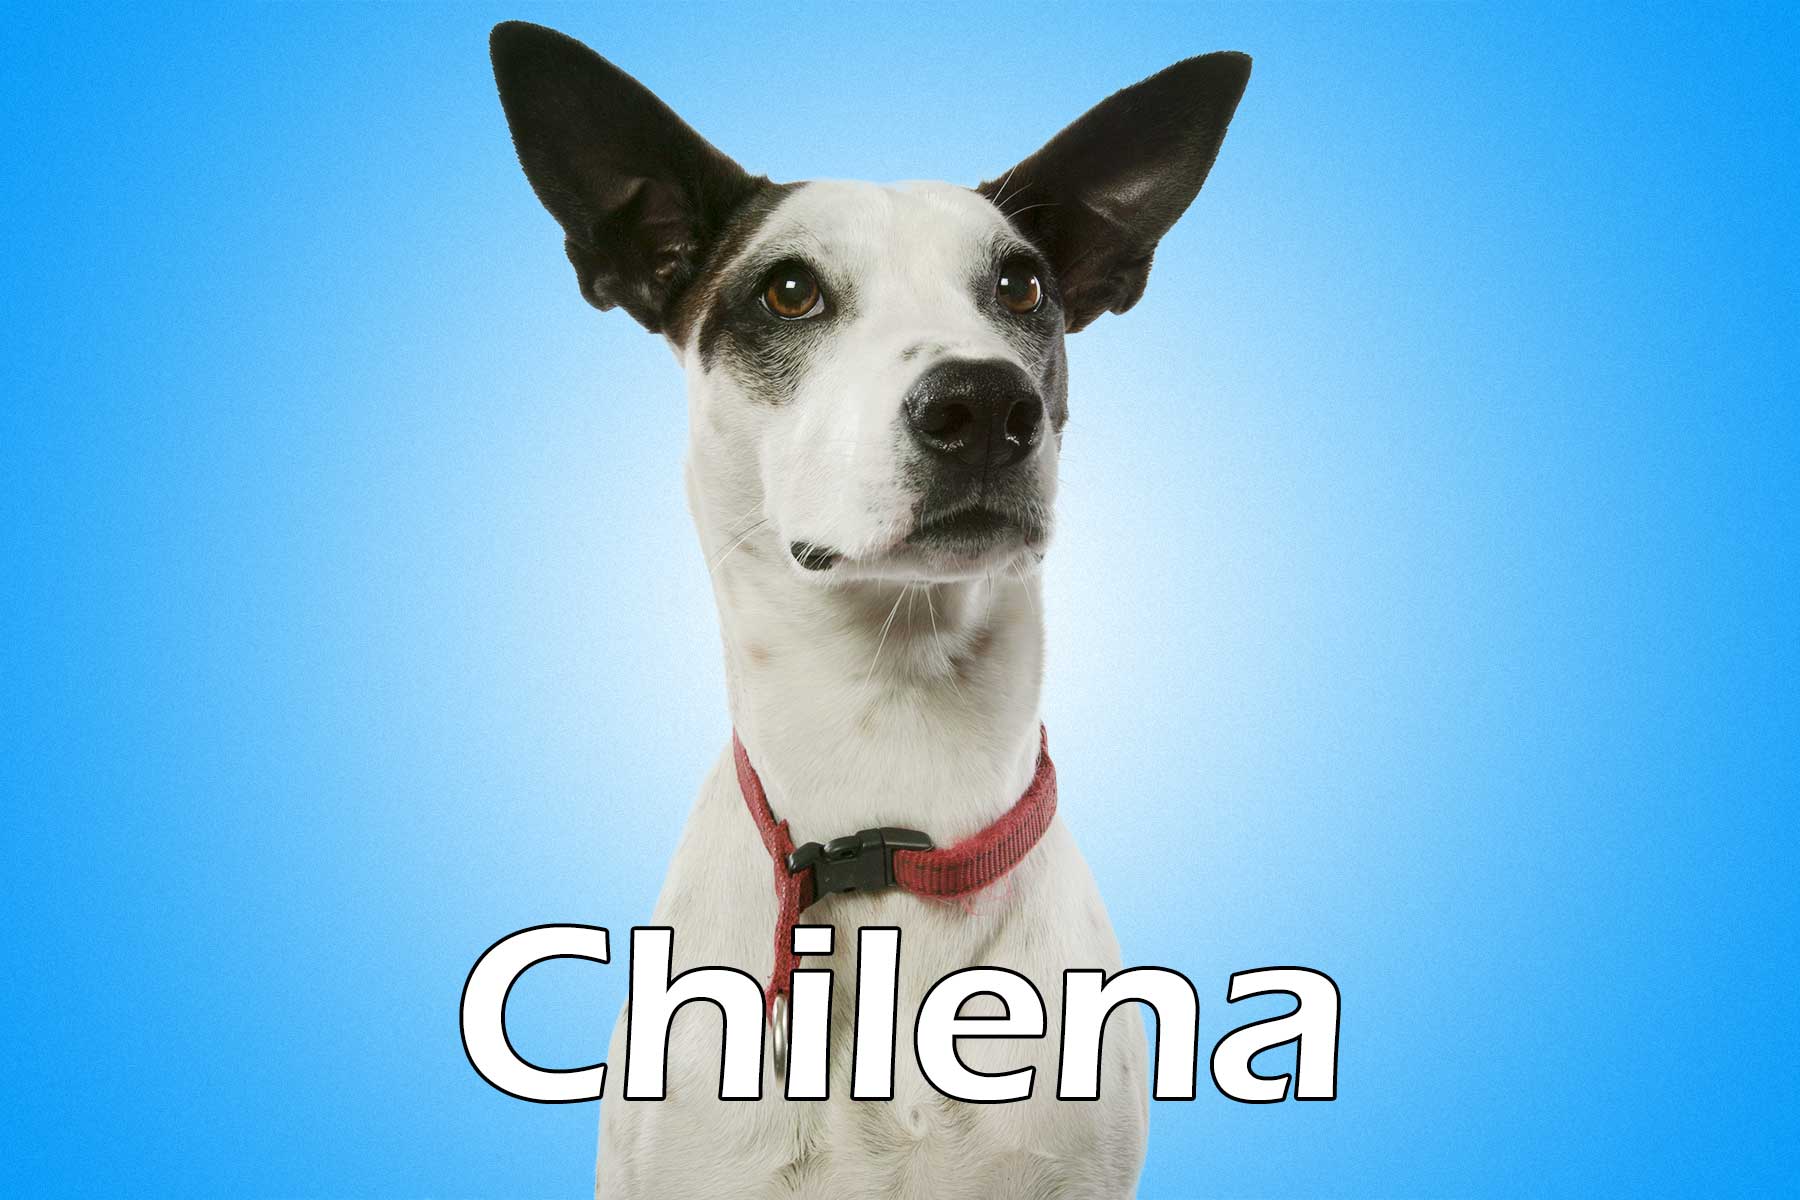 Chilena